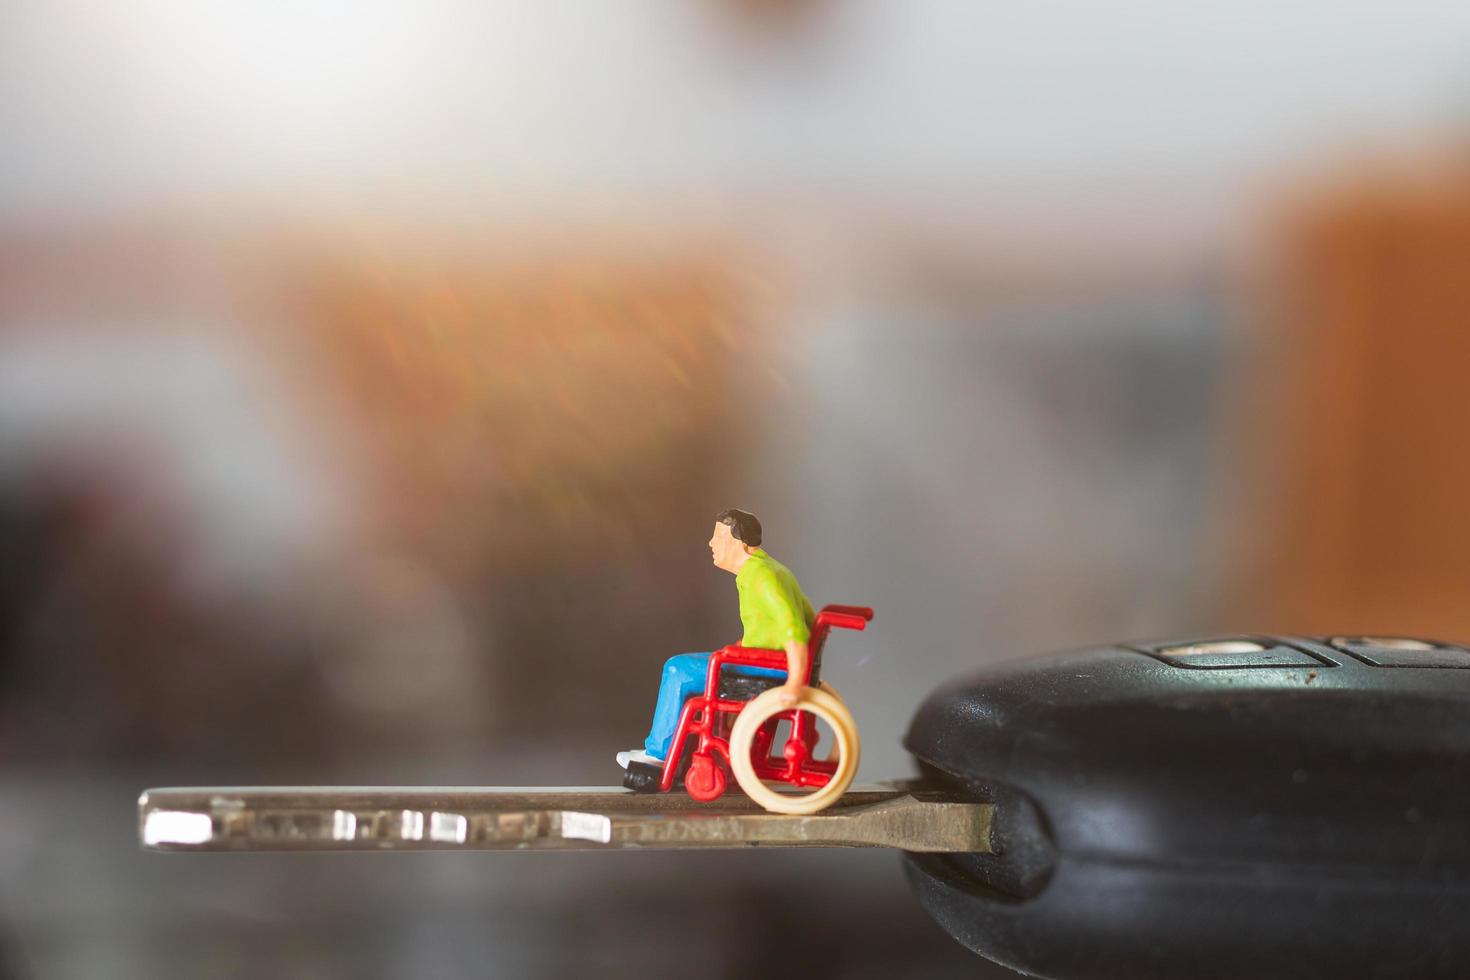 homem deficiente em miniatura sentado em uma cadeira de rodas na chave de um carro foto